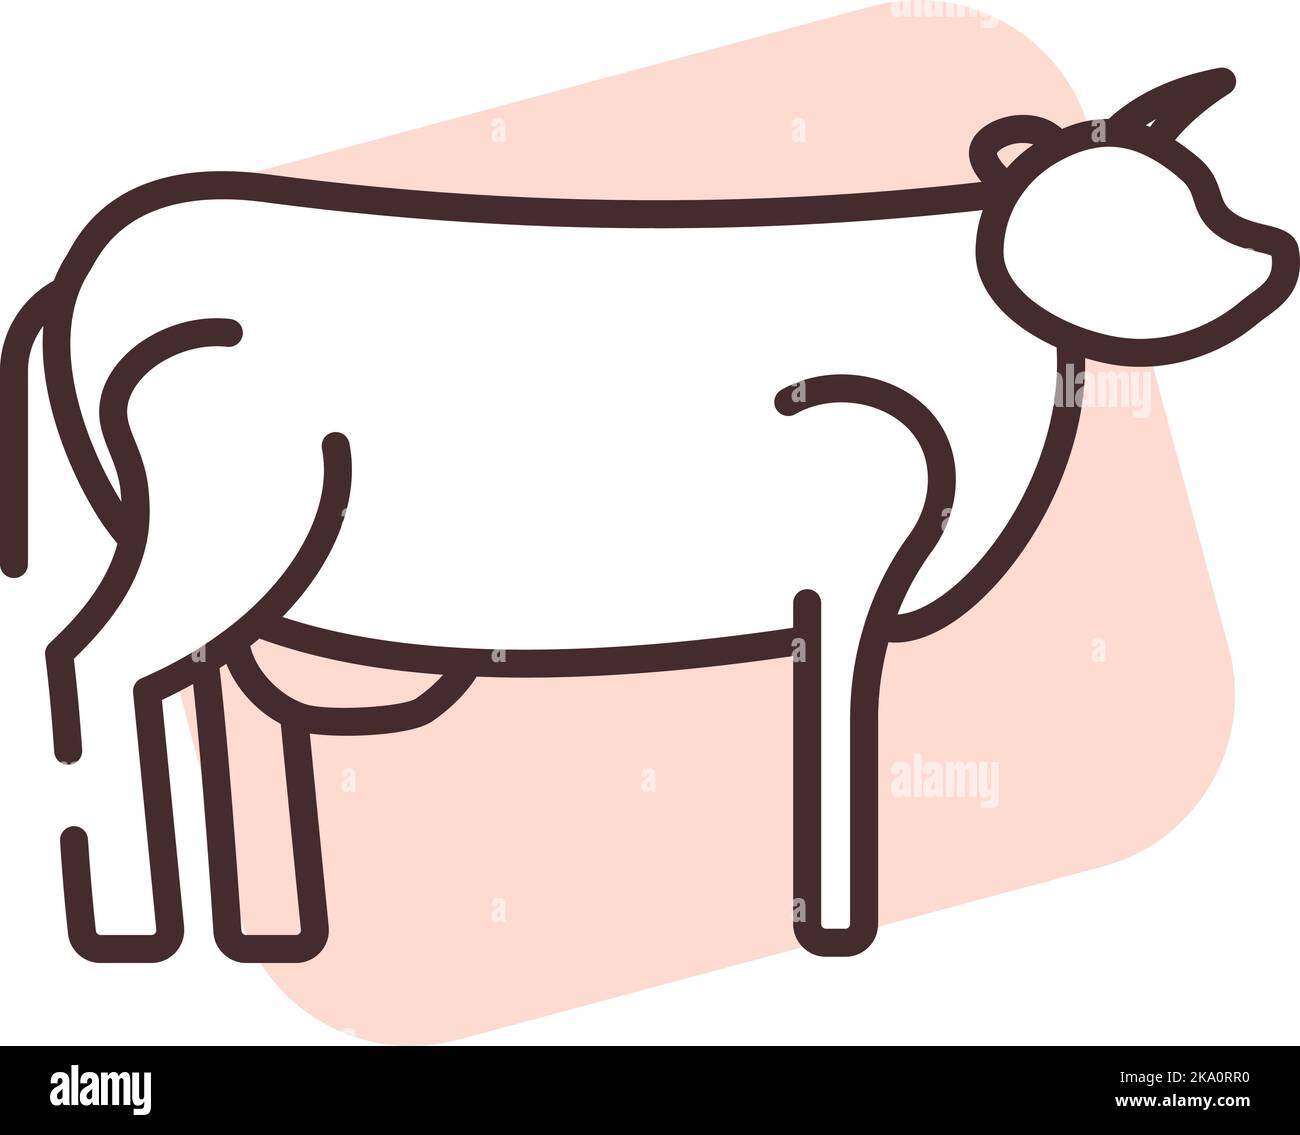 Allergie auf Kuhfleisch, Illustration oder Symbol, Vektor auf weißem Hintergrund. Stock Vektor